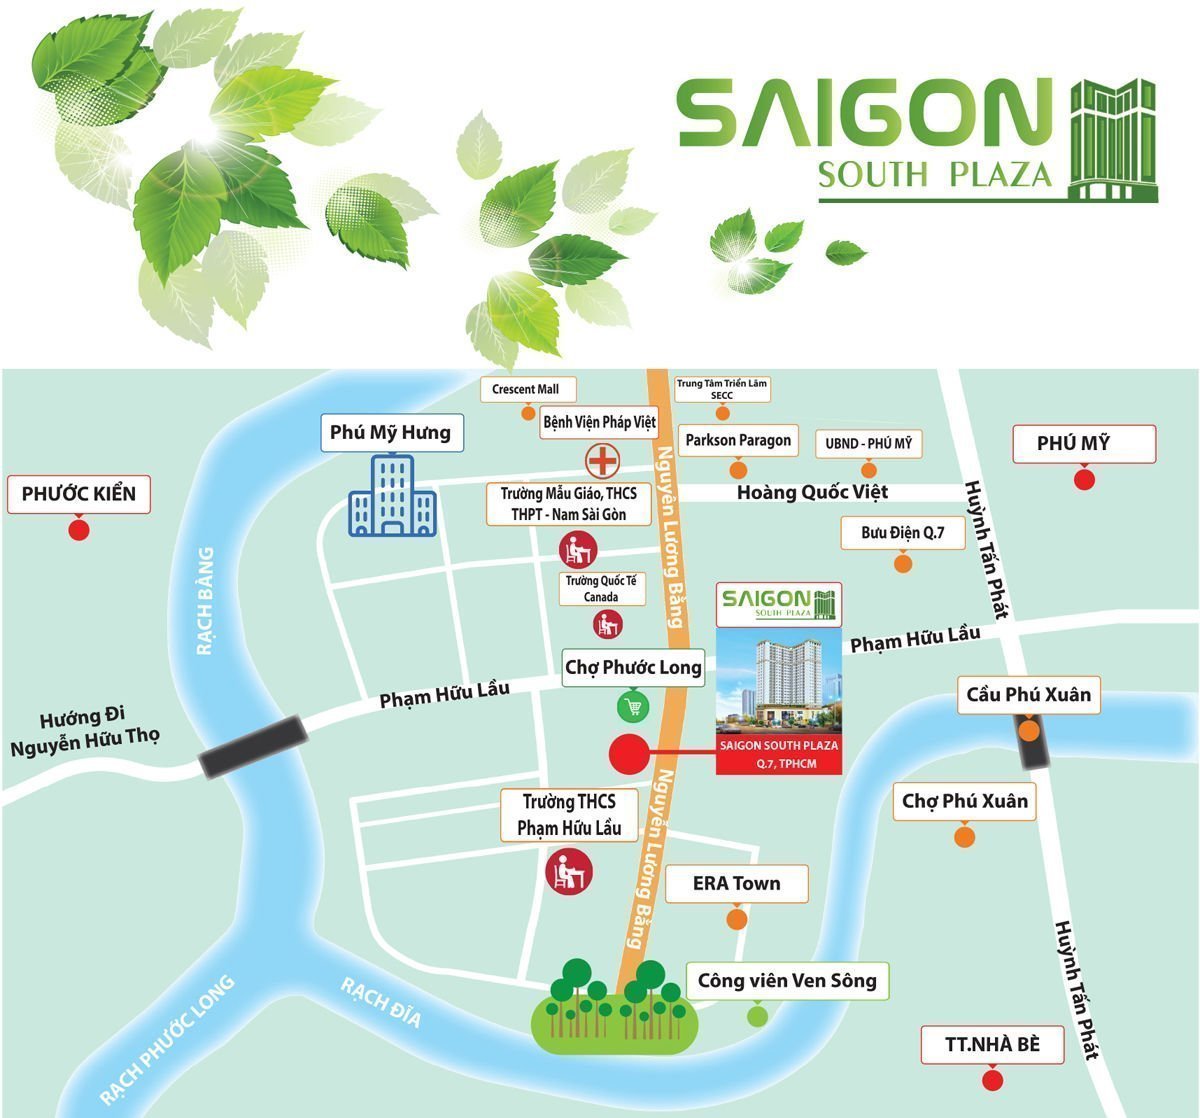 Chung cư Saigon South Plaza sở hữu vị trí vô cùng đắc địa ngay trung tâm